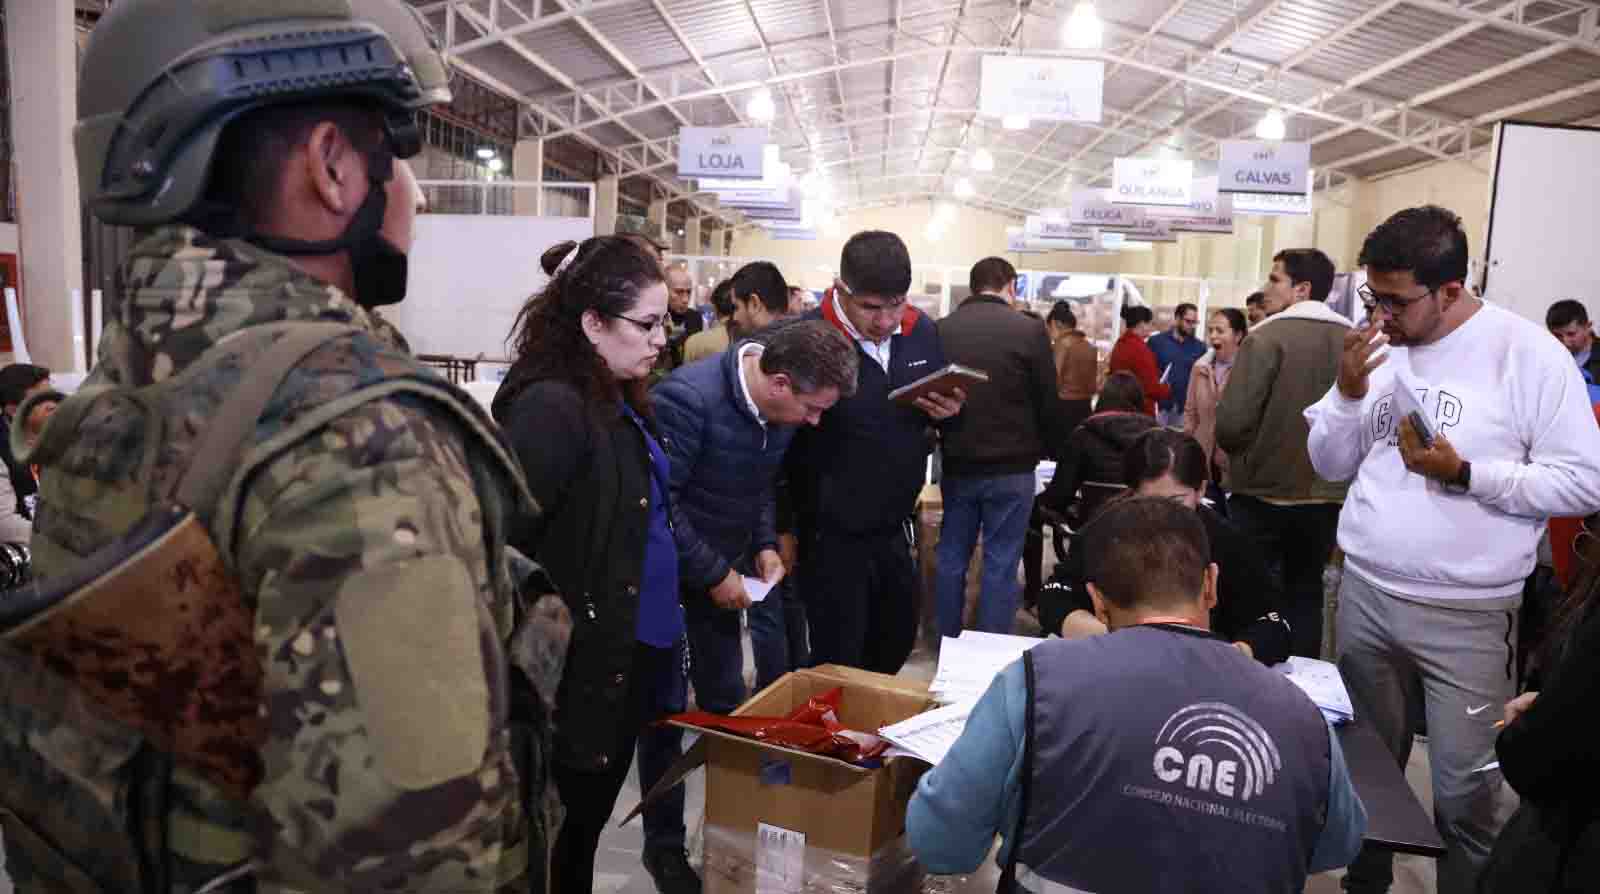 El reconteo de voto a voto se inició en Loja este martes, 7 de febrero, tras varias inconsistencias detectadas. Foto: Cortesía CNE Loja